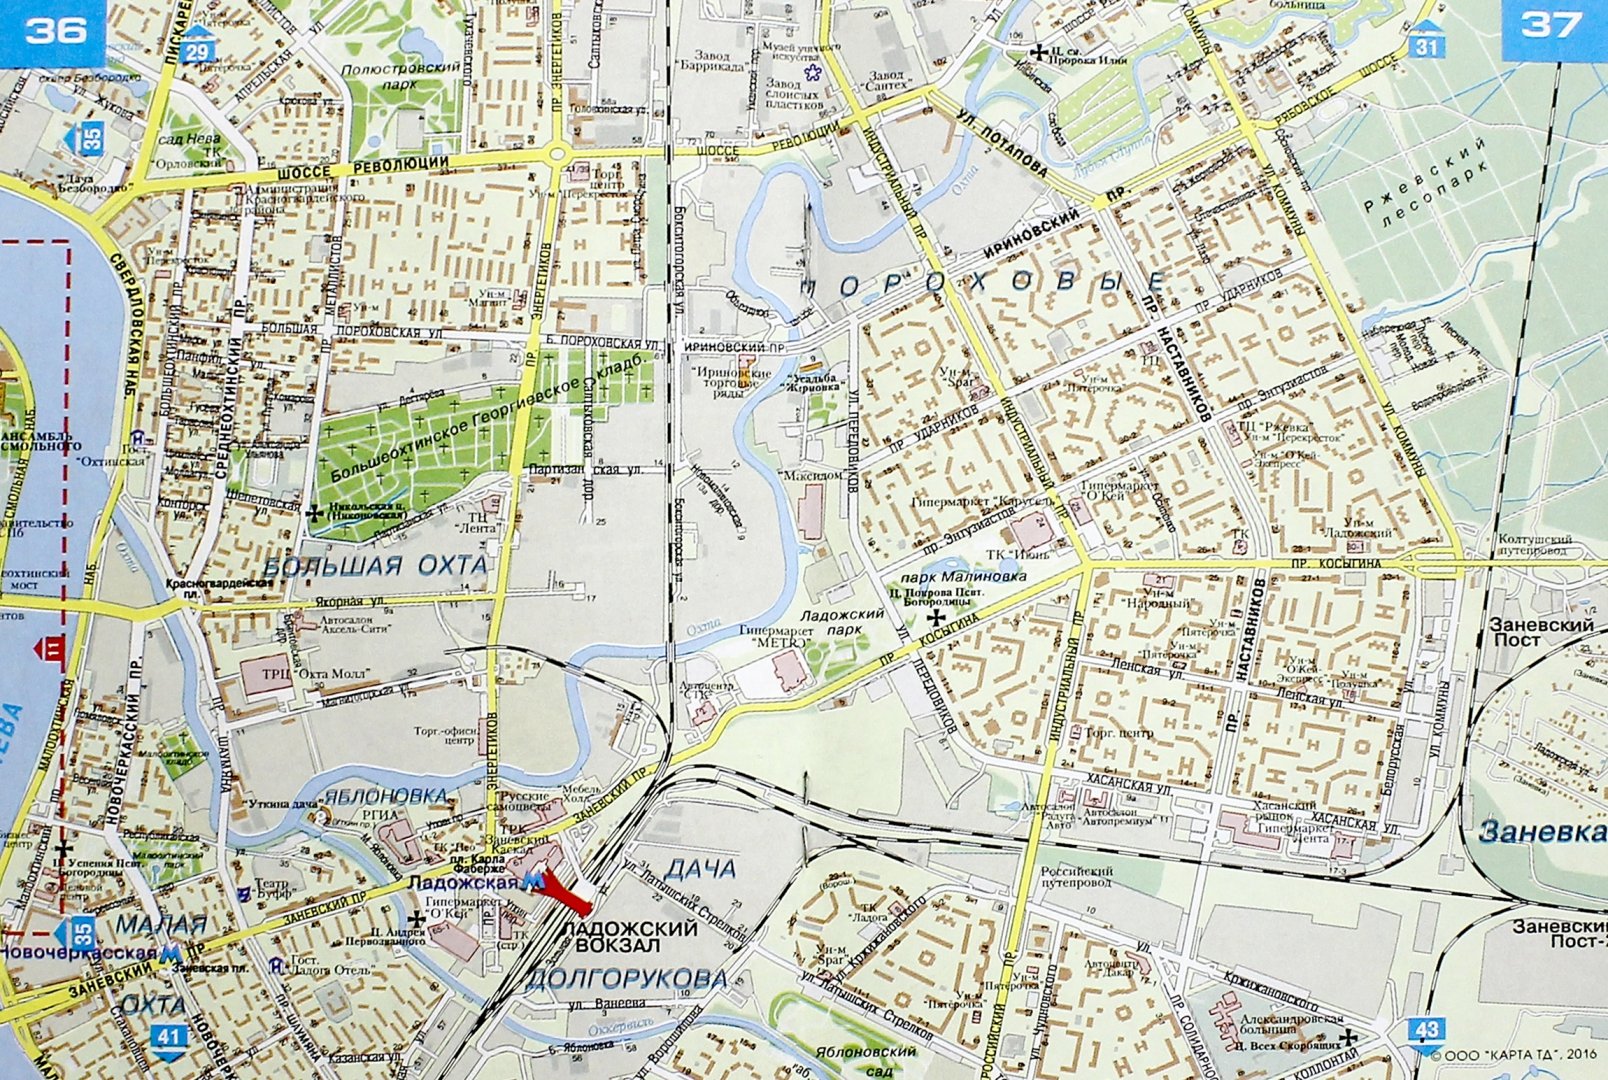 Иллюстрация 1 из 17 для Санкт-Петербург. Атлас города для жителей и гостей. Масштаб 1:30000 | Лабиринт - книги. Источник: Лабиринт